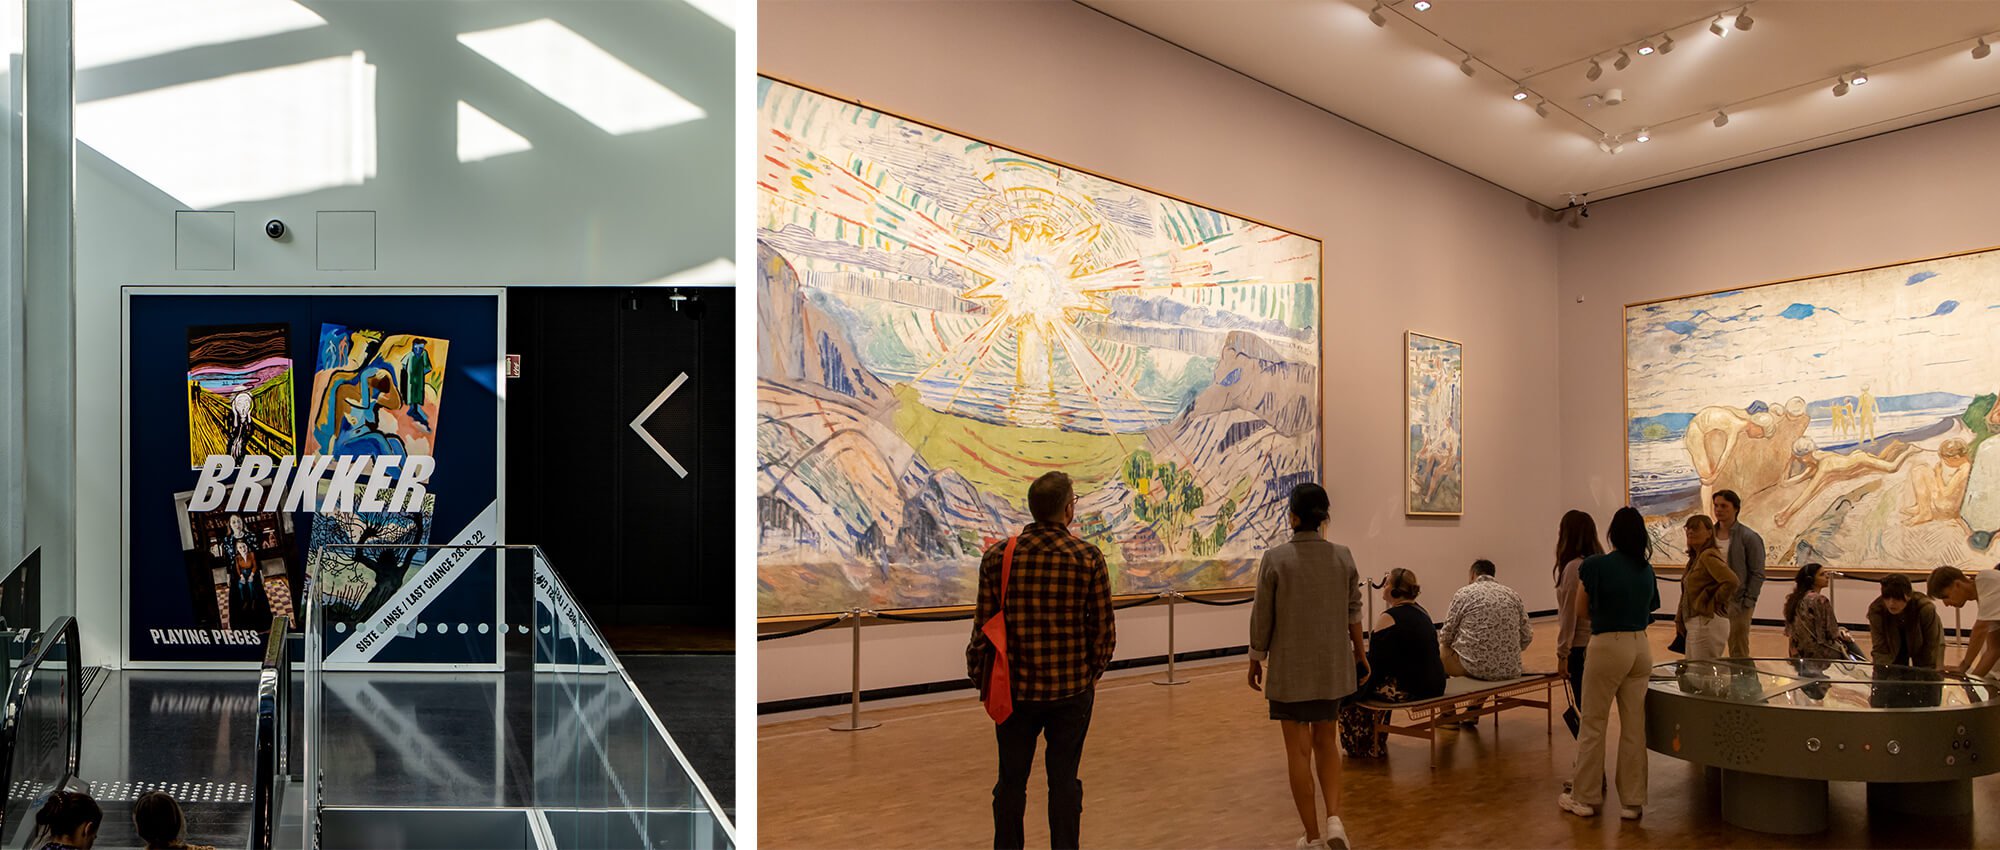 Workation in Norwegen, Besuch des Osloer Munch Museum, Ausstellung „Broker" und „Monumentals"